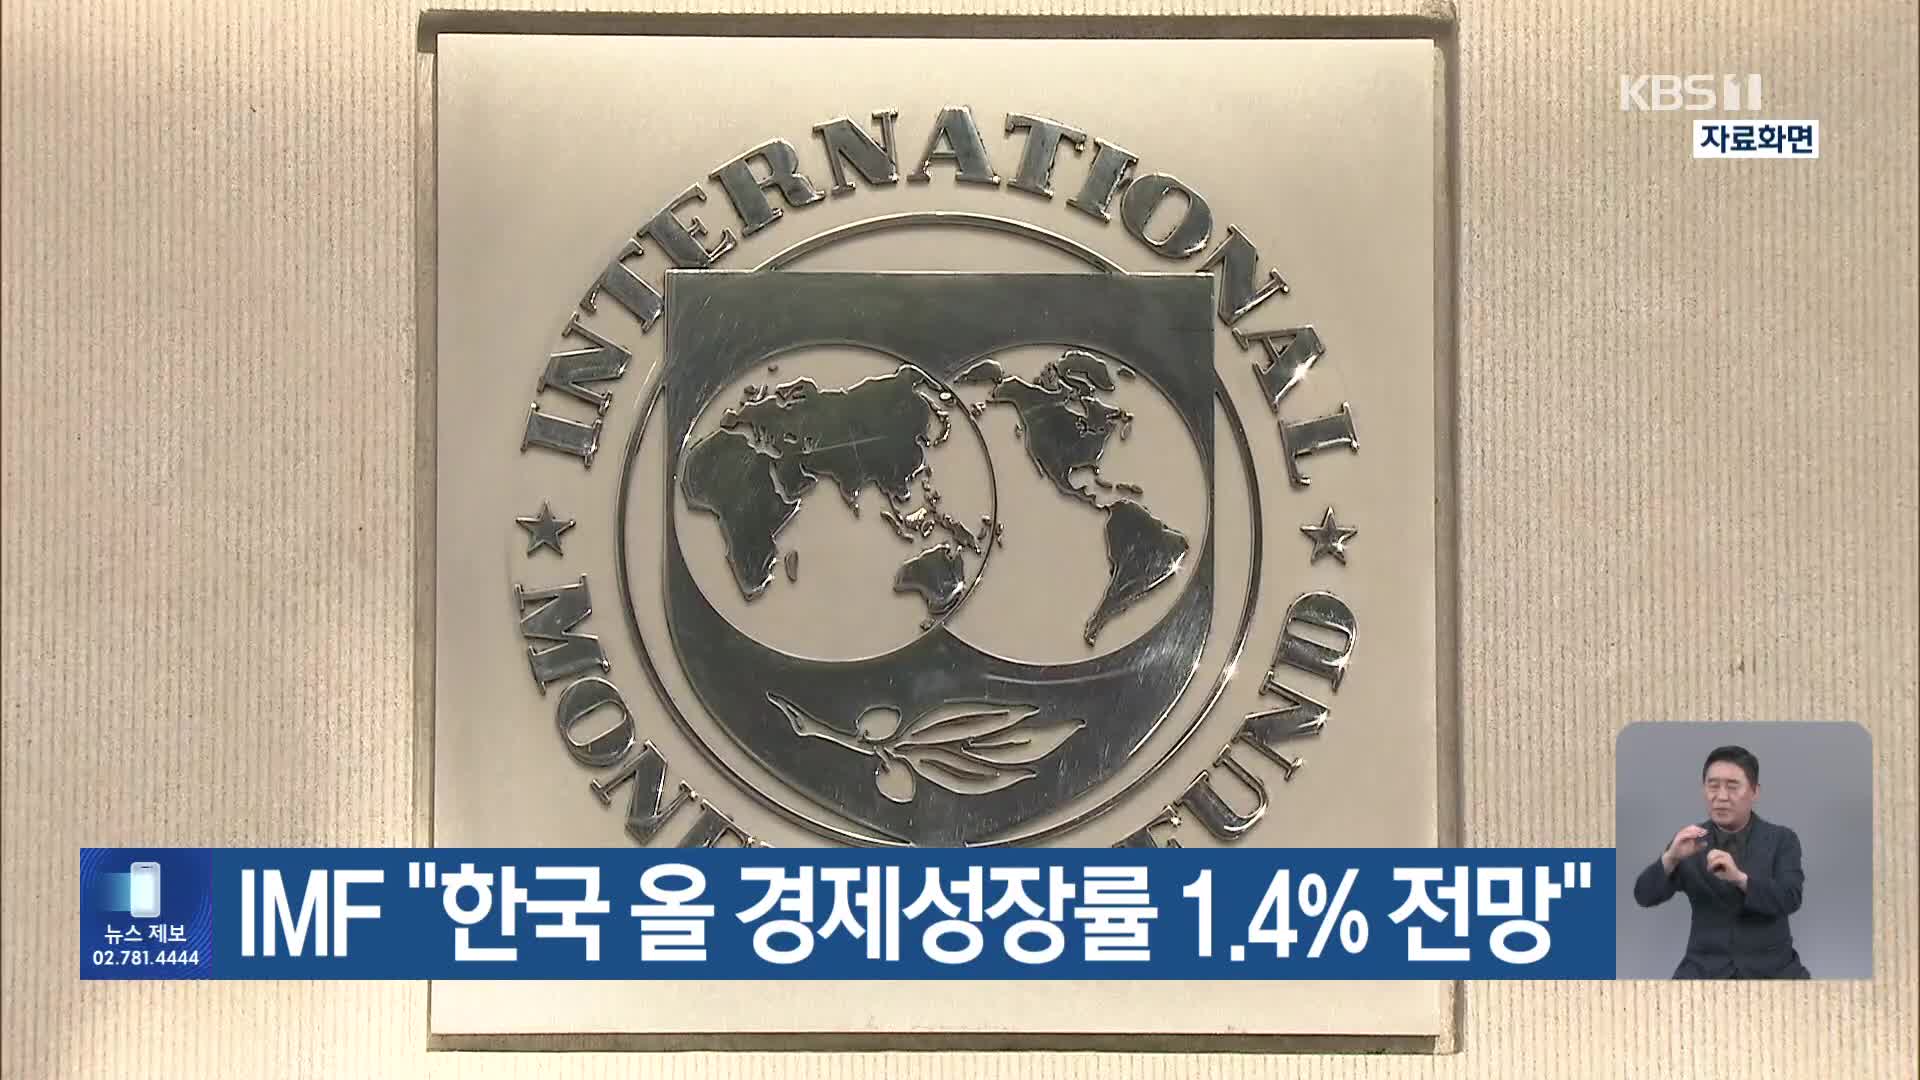 IMF “한국 올 경제성장률 1.4% 전망”